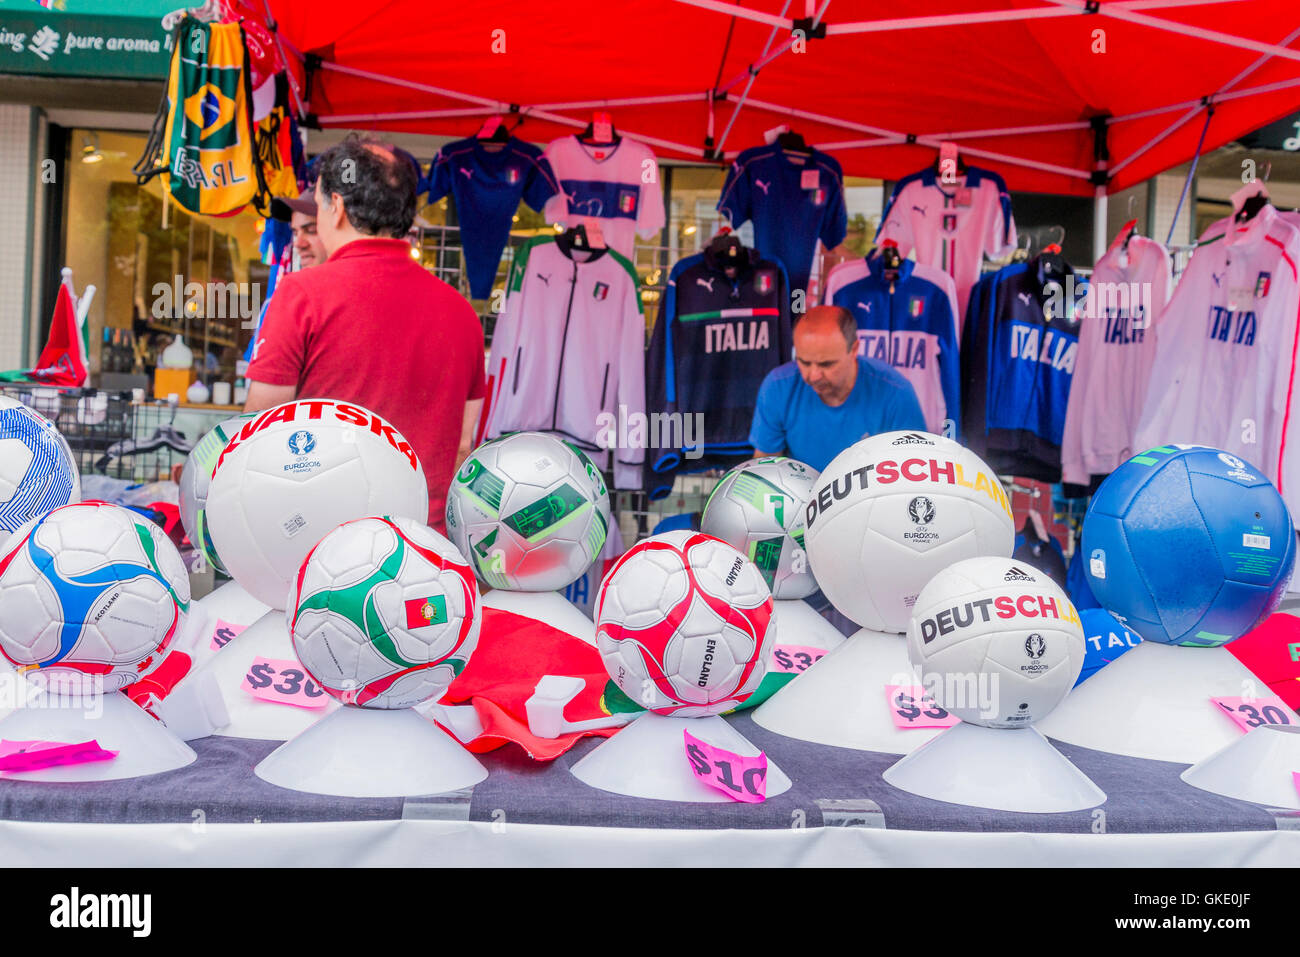 Les ballons de football et de t-shirts à vendre jour italien, Commercial Drive, Vancouver, British Columbia, Canada Banque D'Images